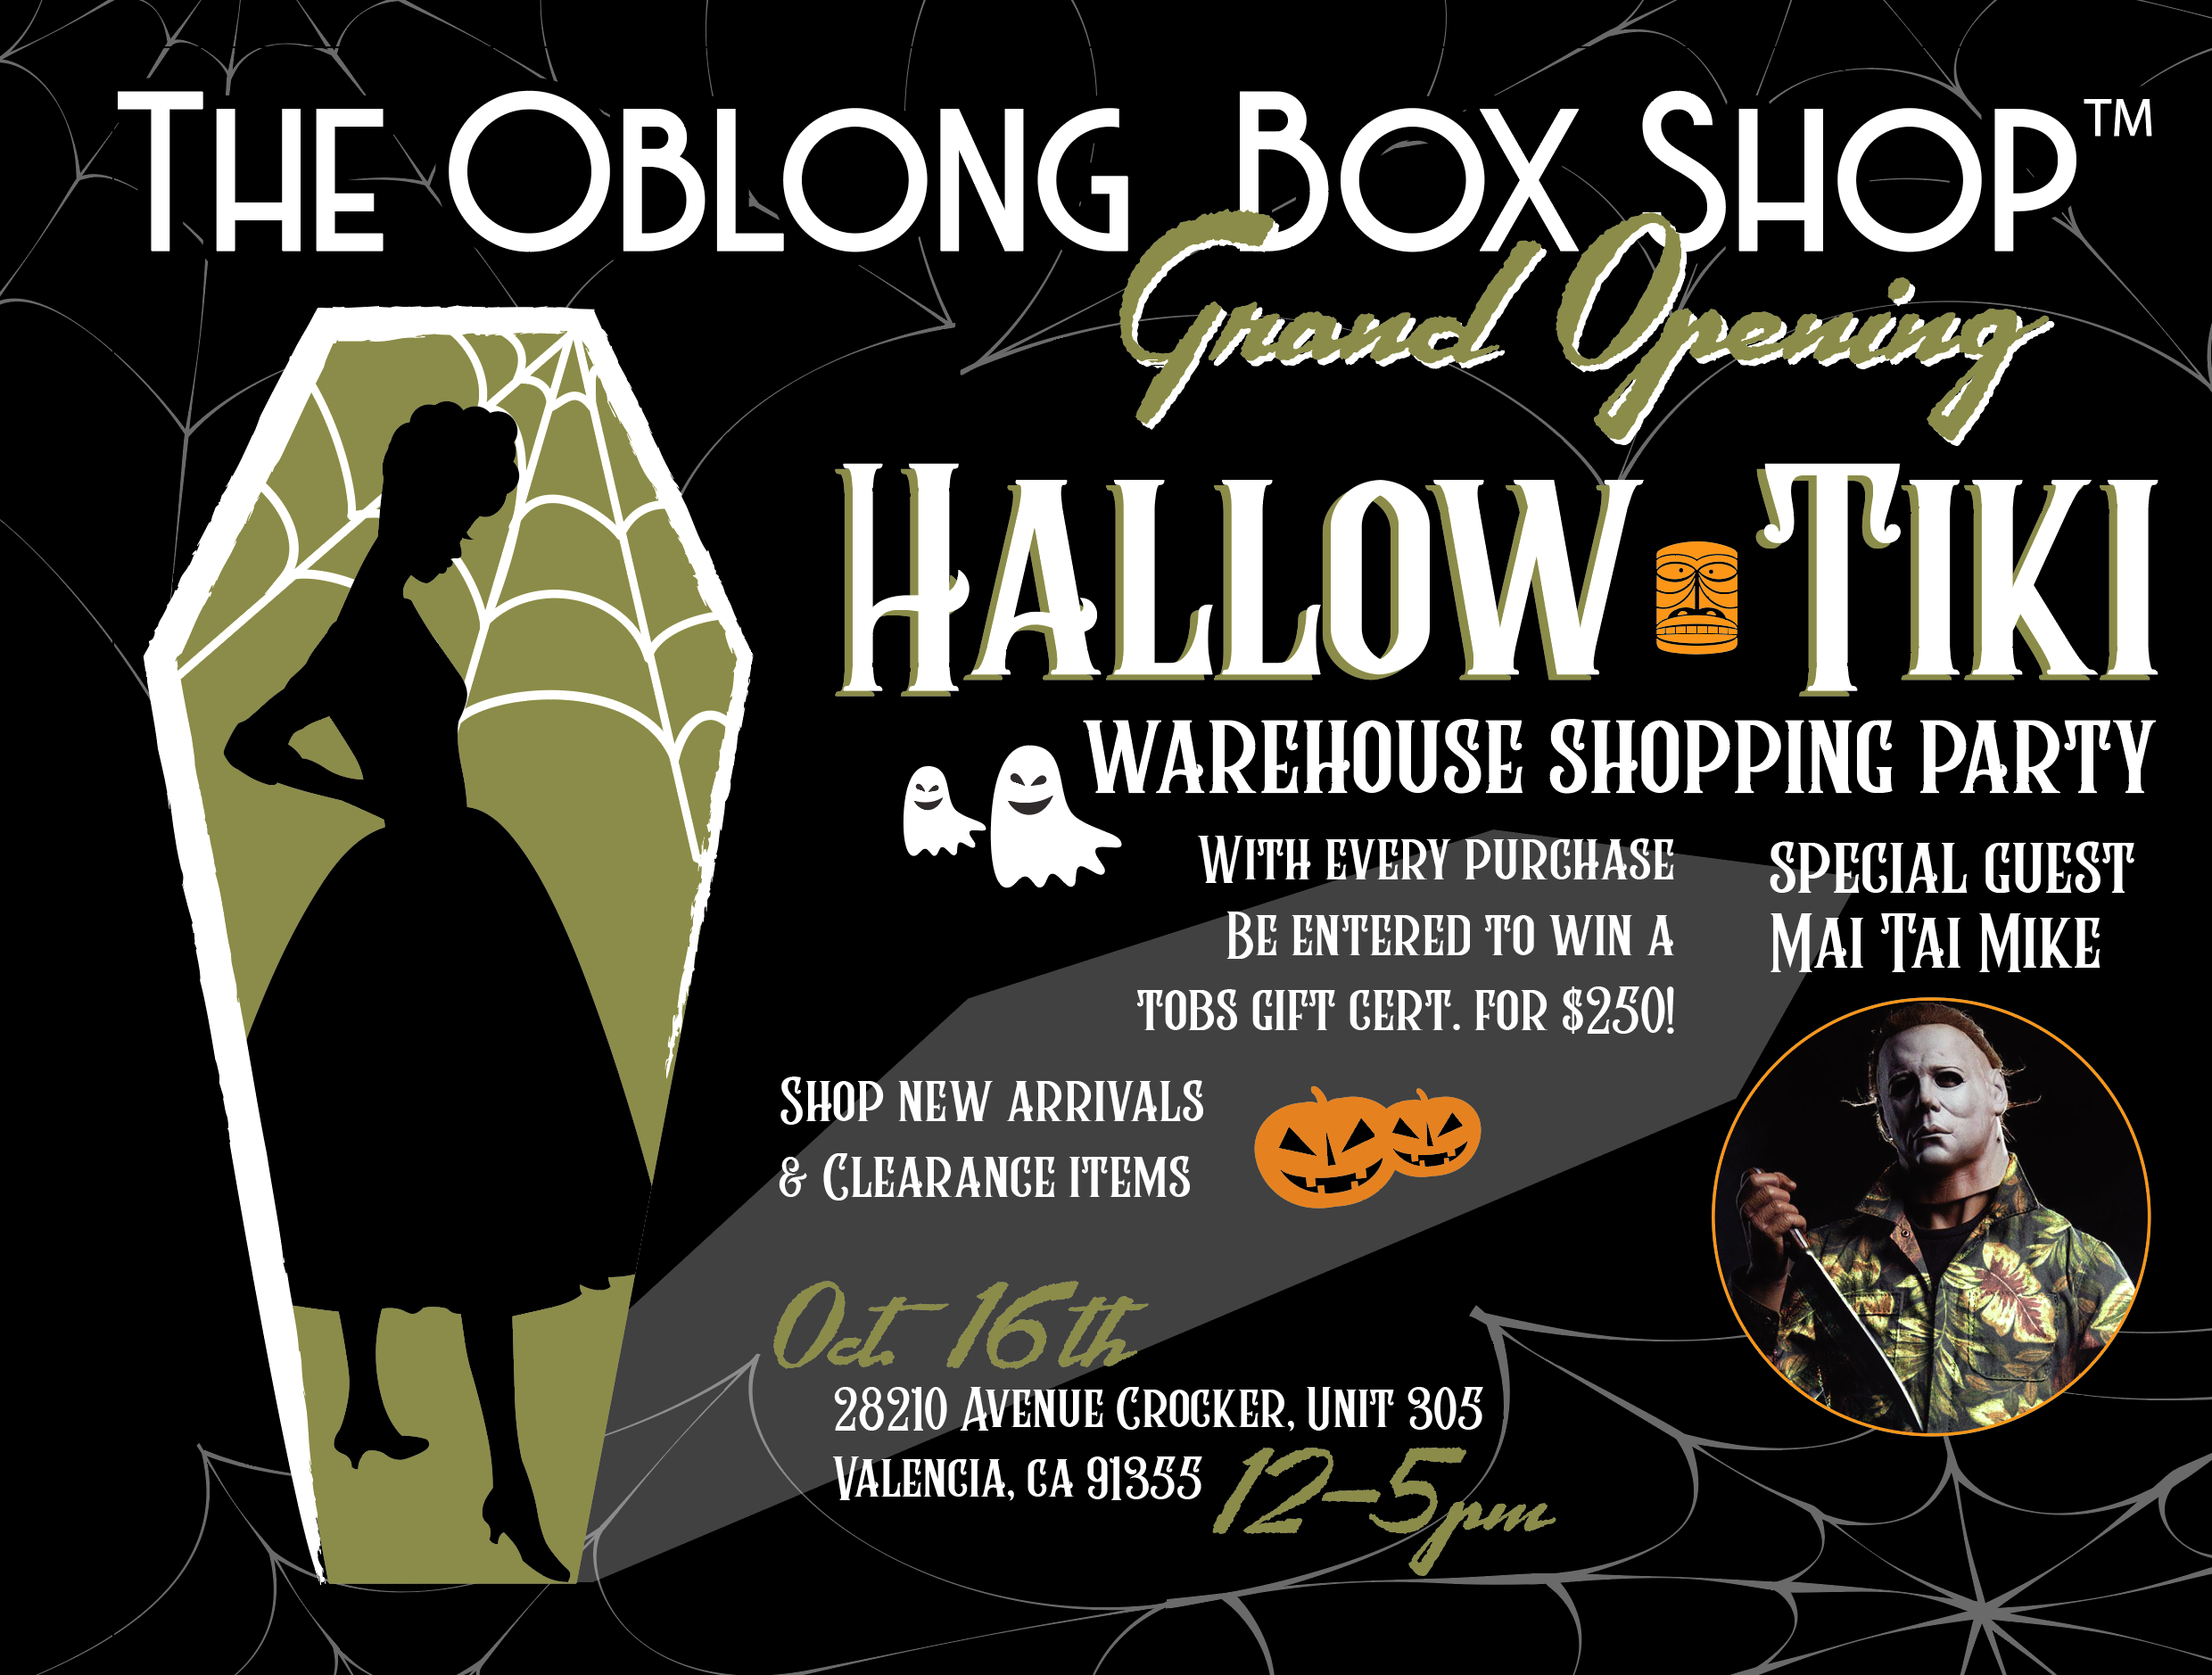 HALLOW-TIKI Warehouse Shopping Party Oct. 16th